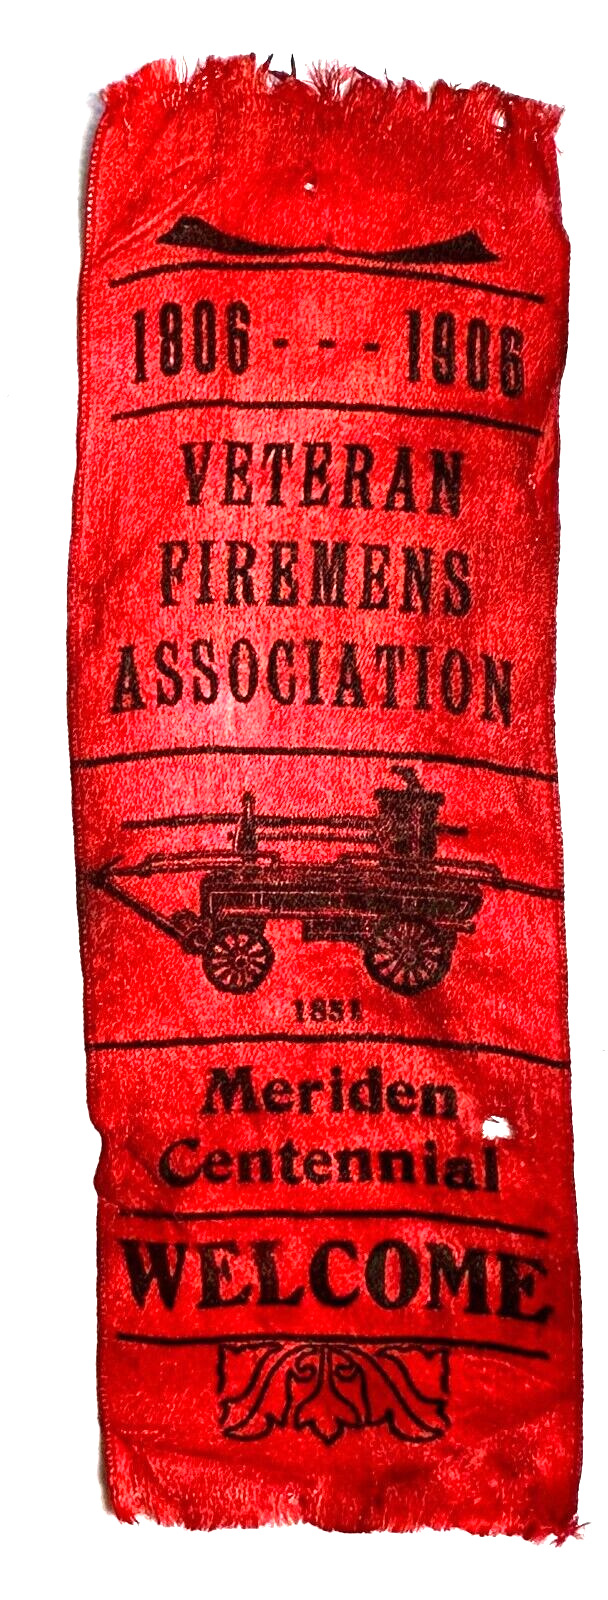 1906 Veteran Firemens Association Meridian Centennial Souvenir Ribbon